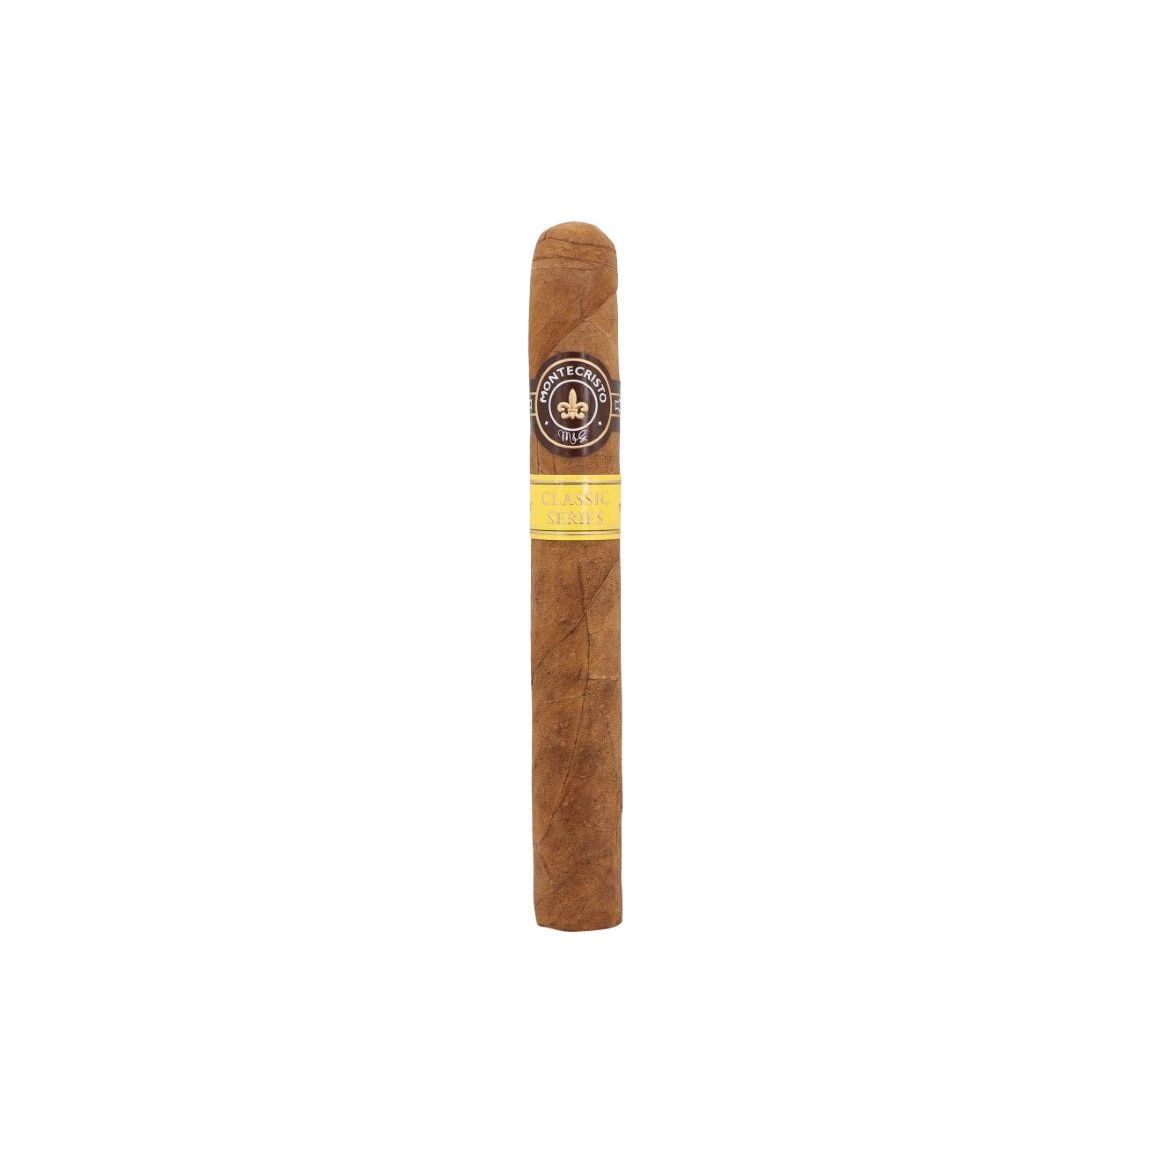 Montecristo Montecristo Classic Tubo Especial cigar